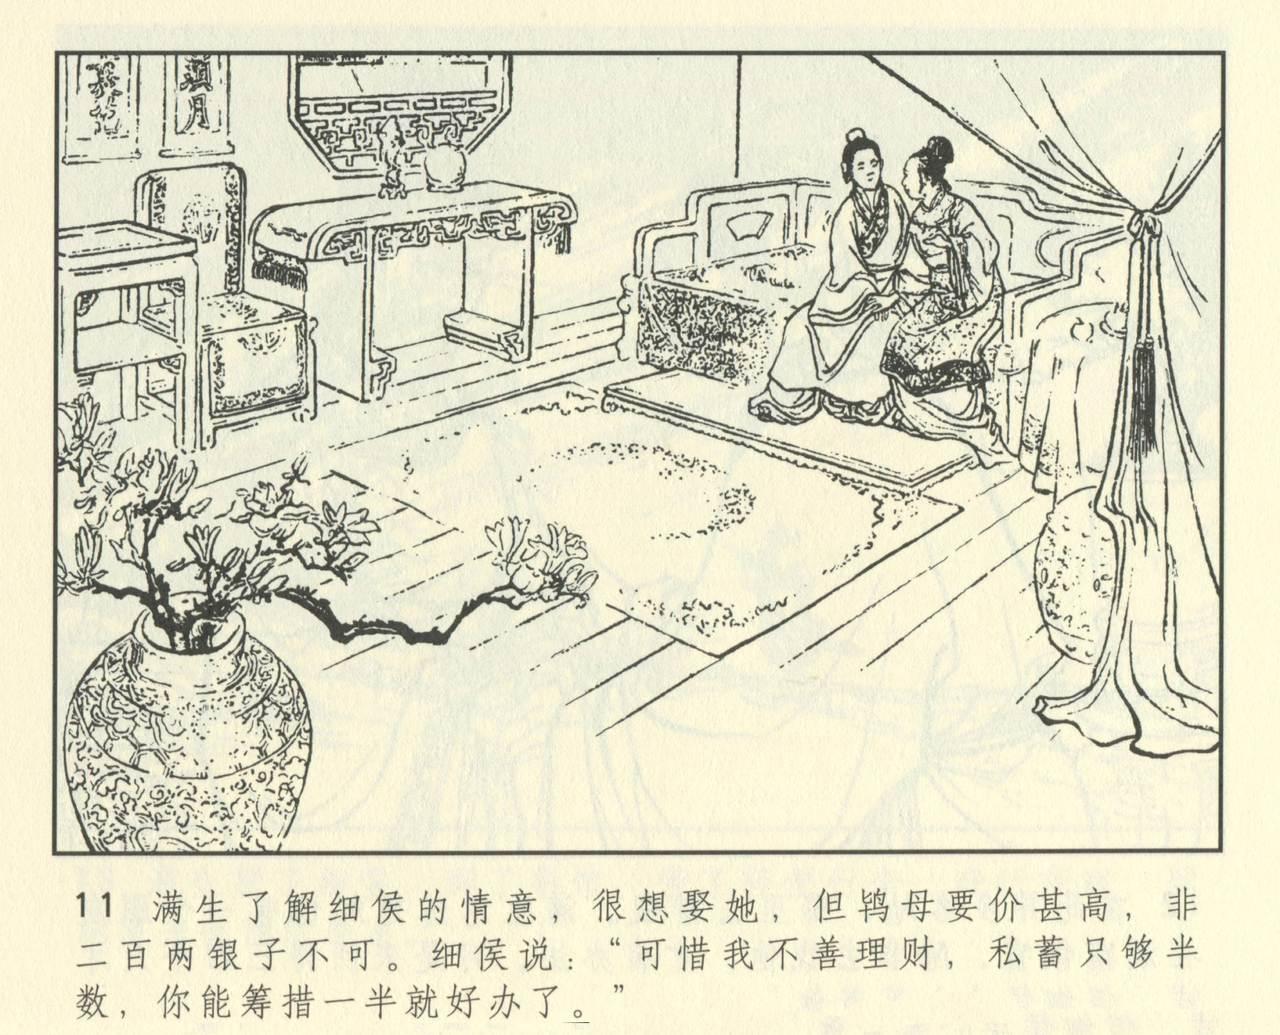 聊斋志异 张玮等绘 天津人民美术出版社 卷二十一 ~ 三十 422